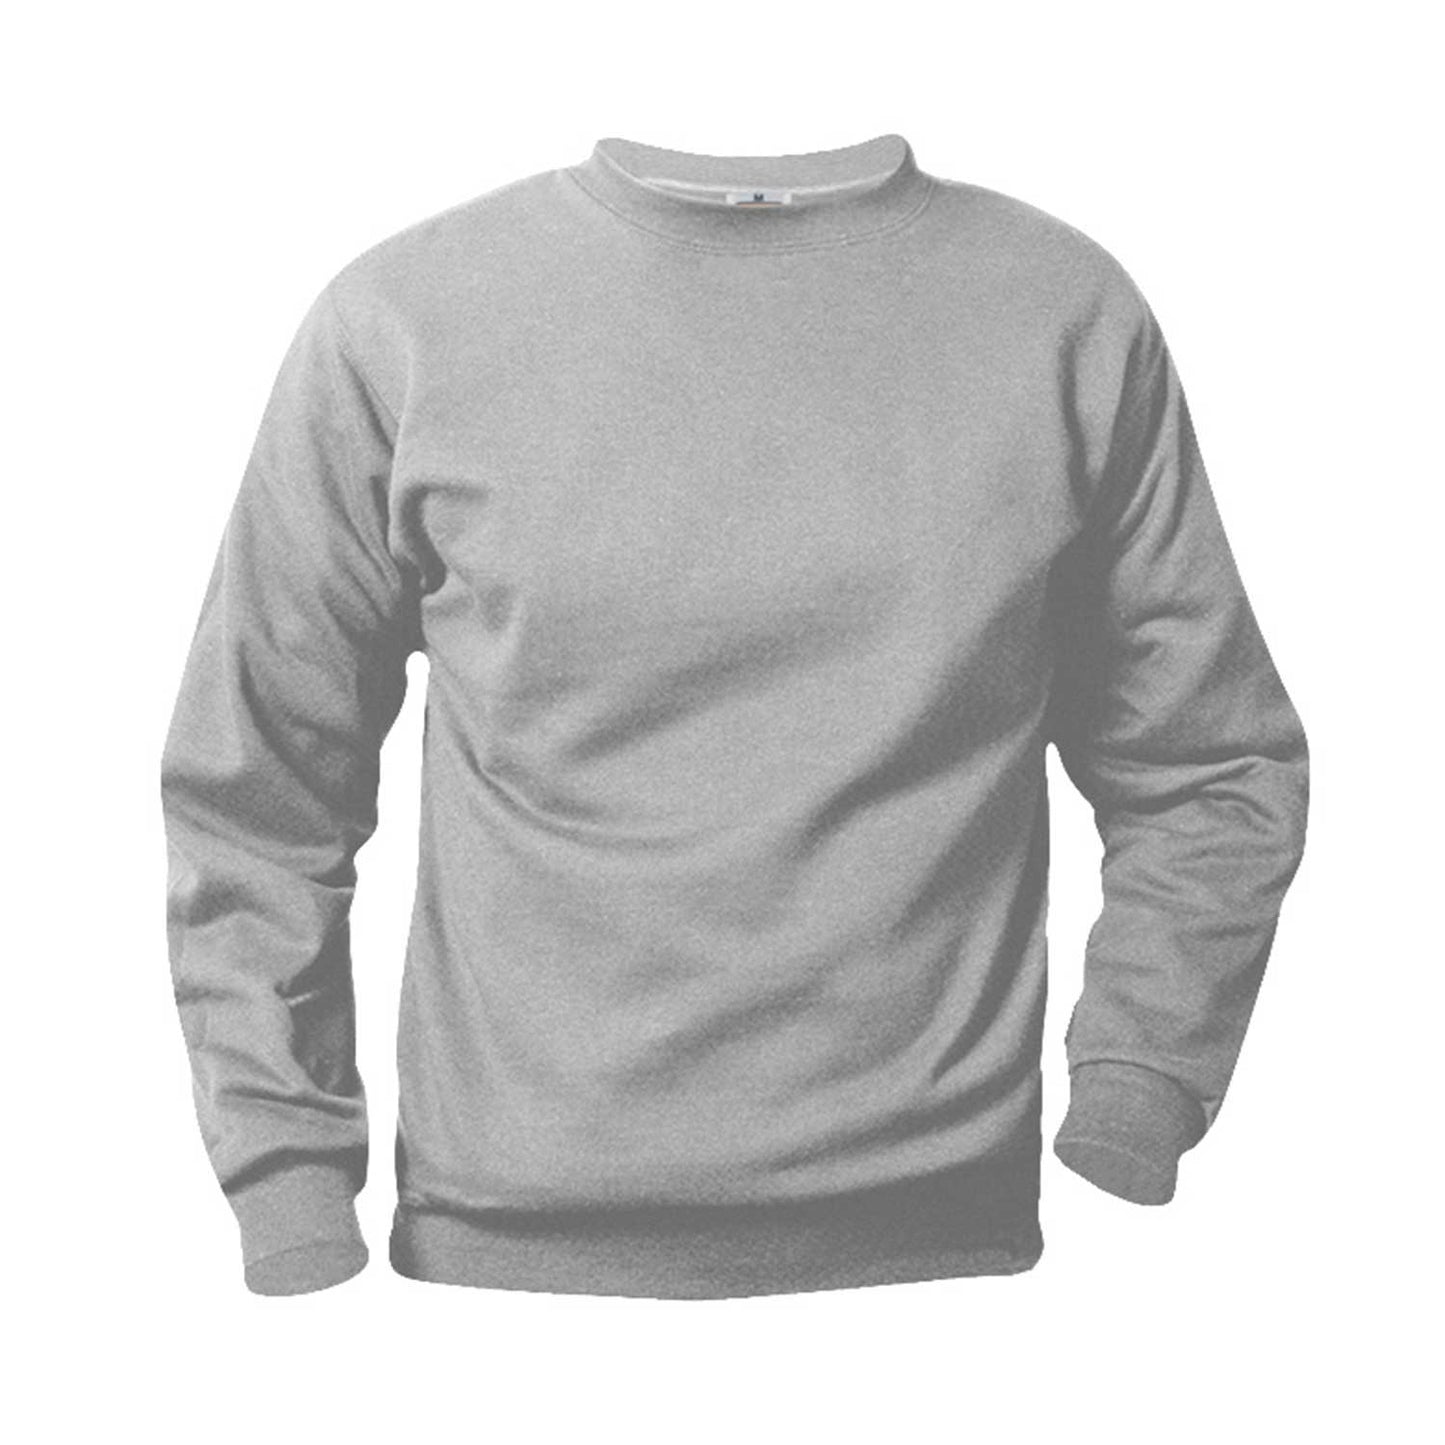 Unisex Crewneck Fleece Sweatshirt w/Logo - 1108